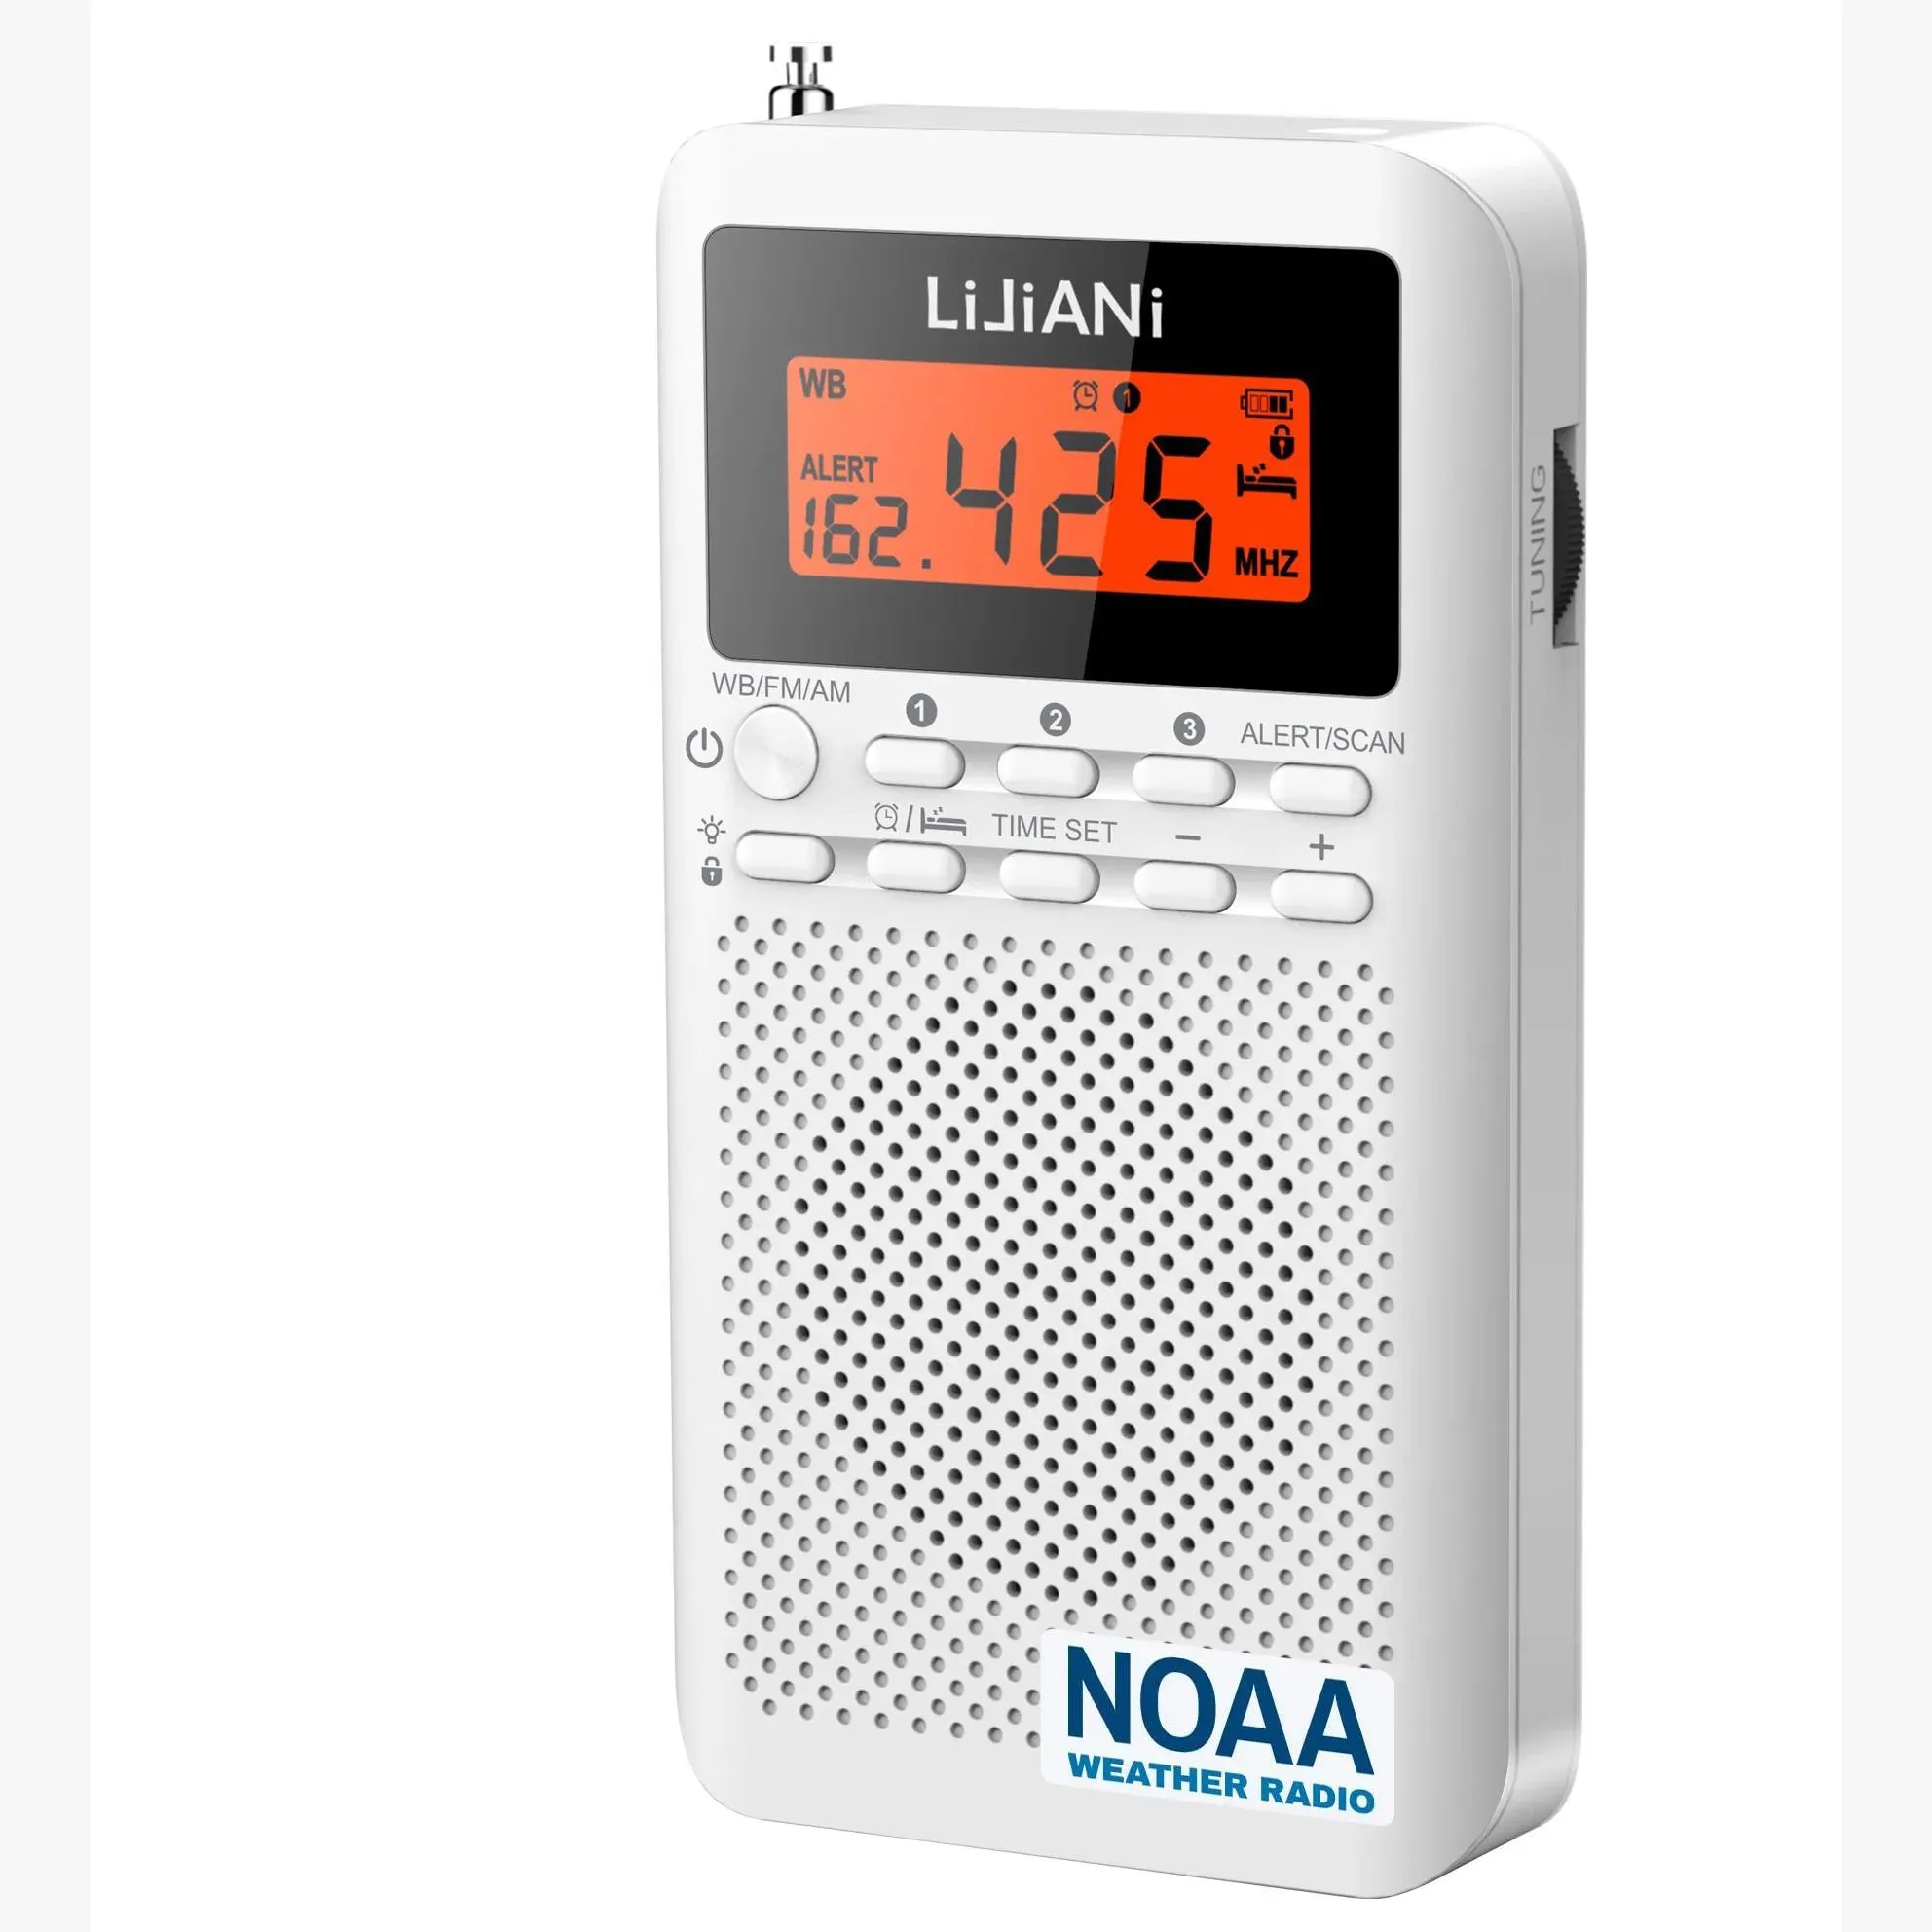 Радио NOAA, погодное радио, AM/FM-диапазон, портативное радио с батарейным питанием и ЖК-дисплеем, цифровой будильник, таймер сна, версия только для США